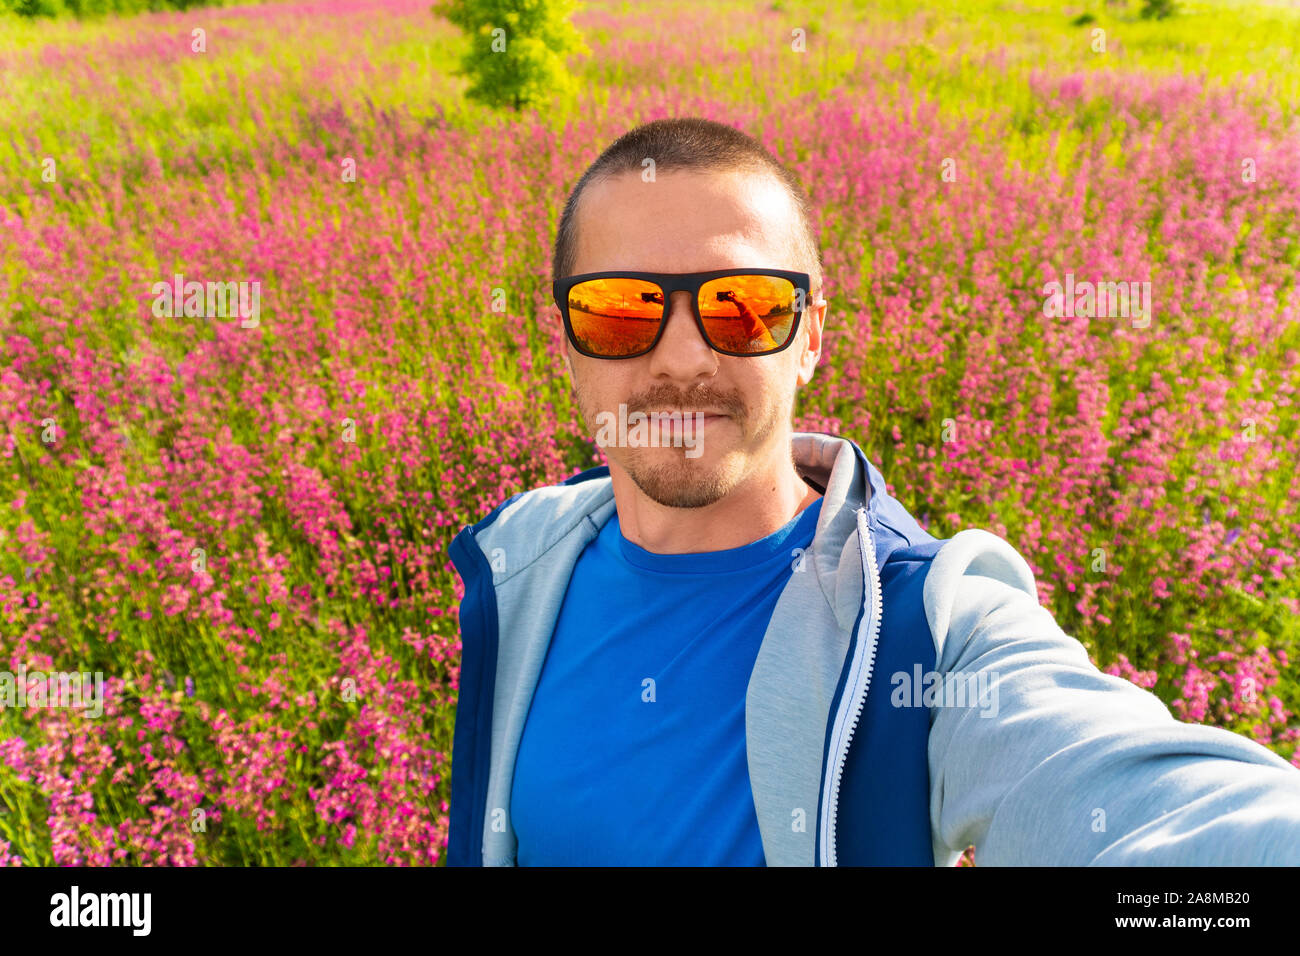 Mann in Farbe Sonnenbrille machen selfie stehen im Feld Stockfoto